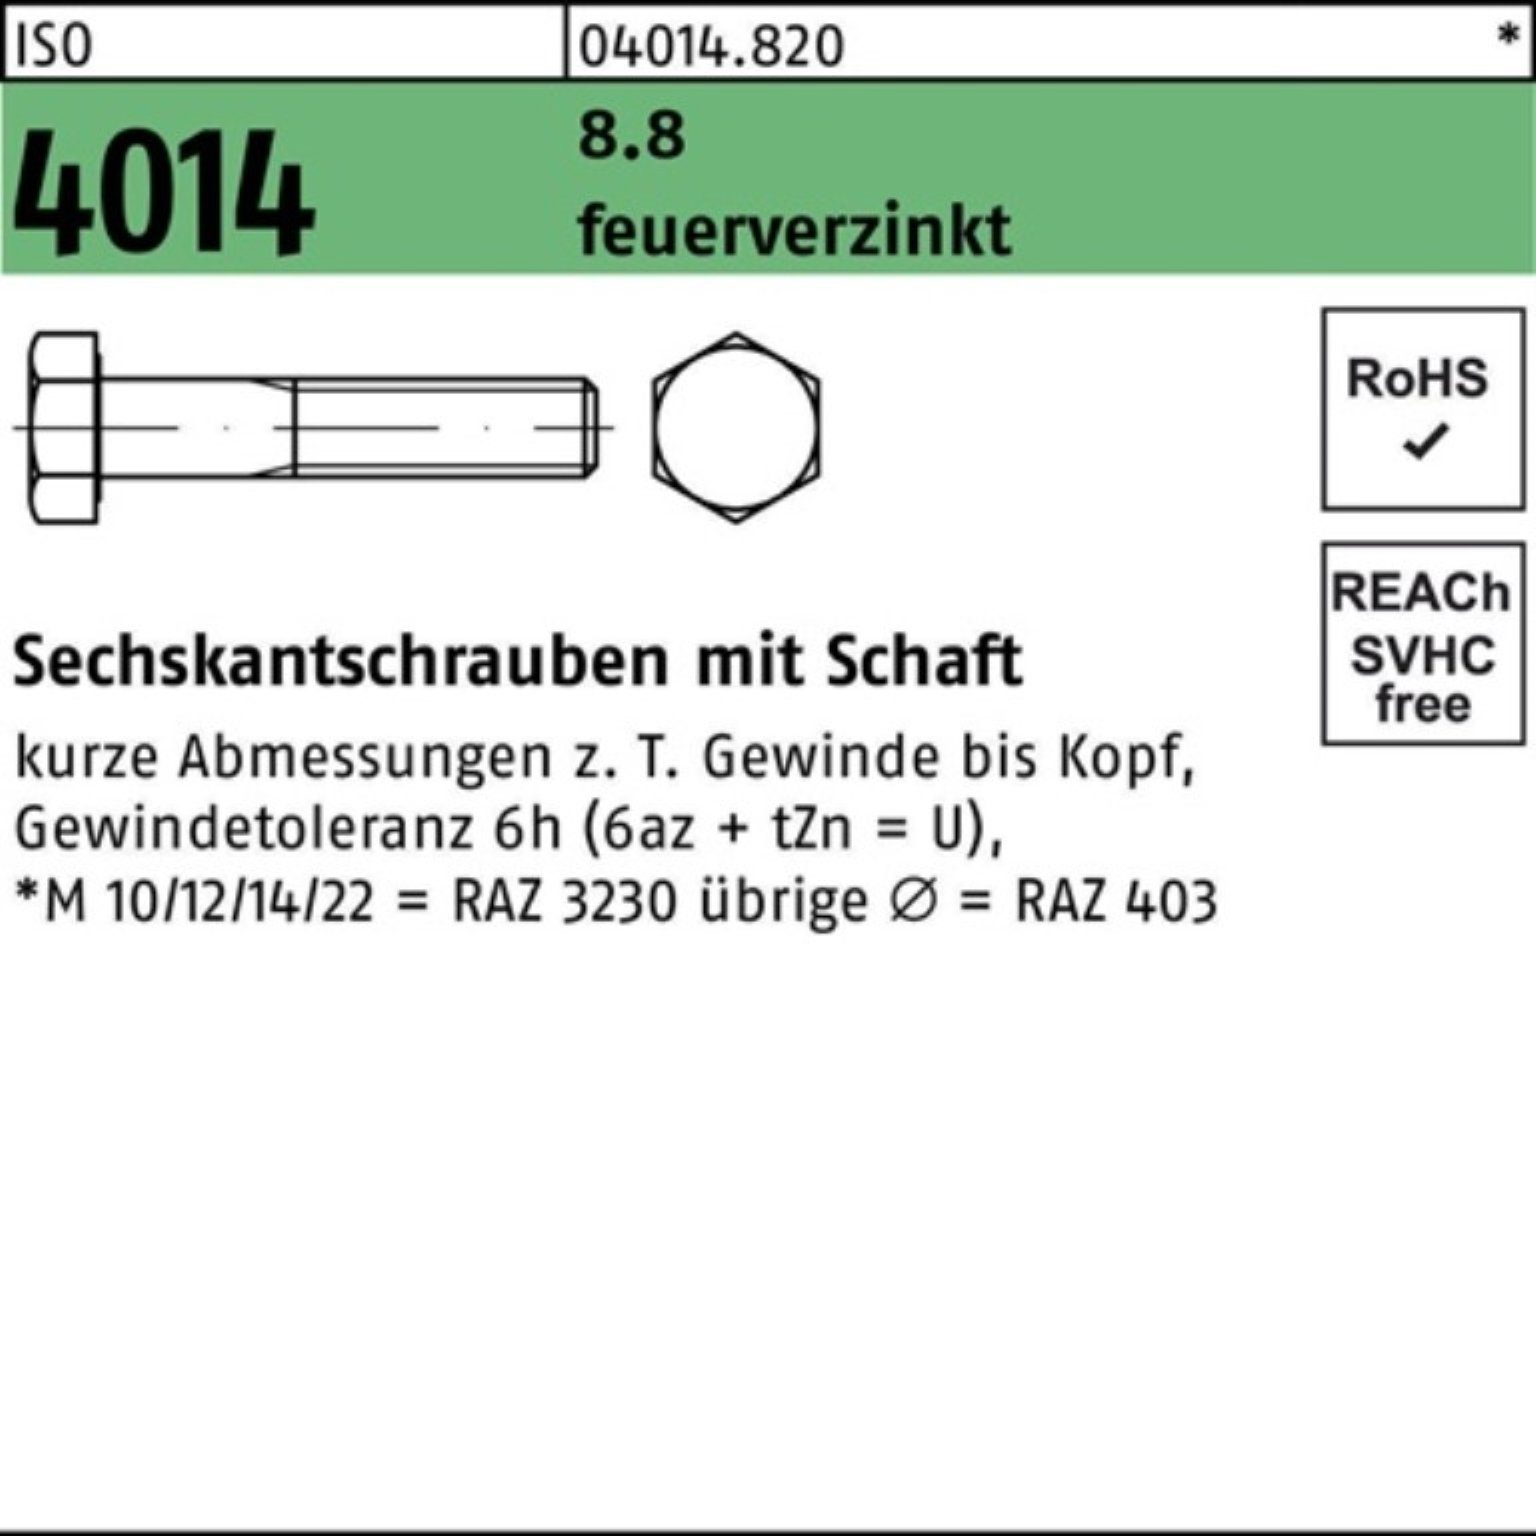 Bufab Sechskantschraube 100er Pack Sechskantschraube ISO 4014 Schaft M20x 180 8.8 feuerverz. 1